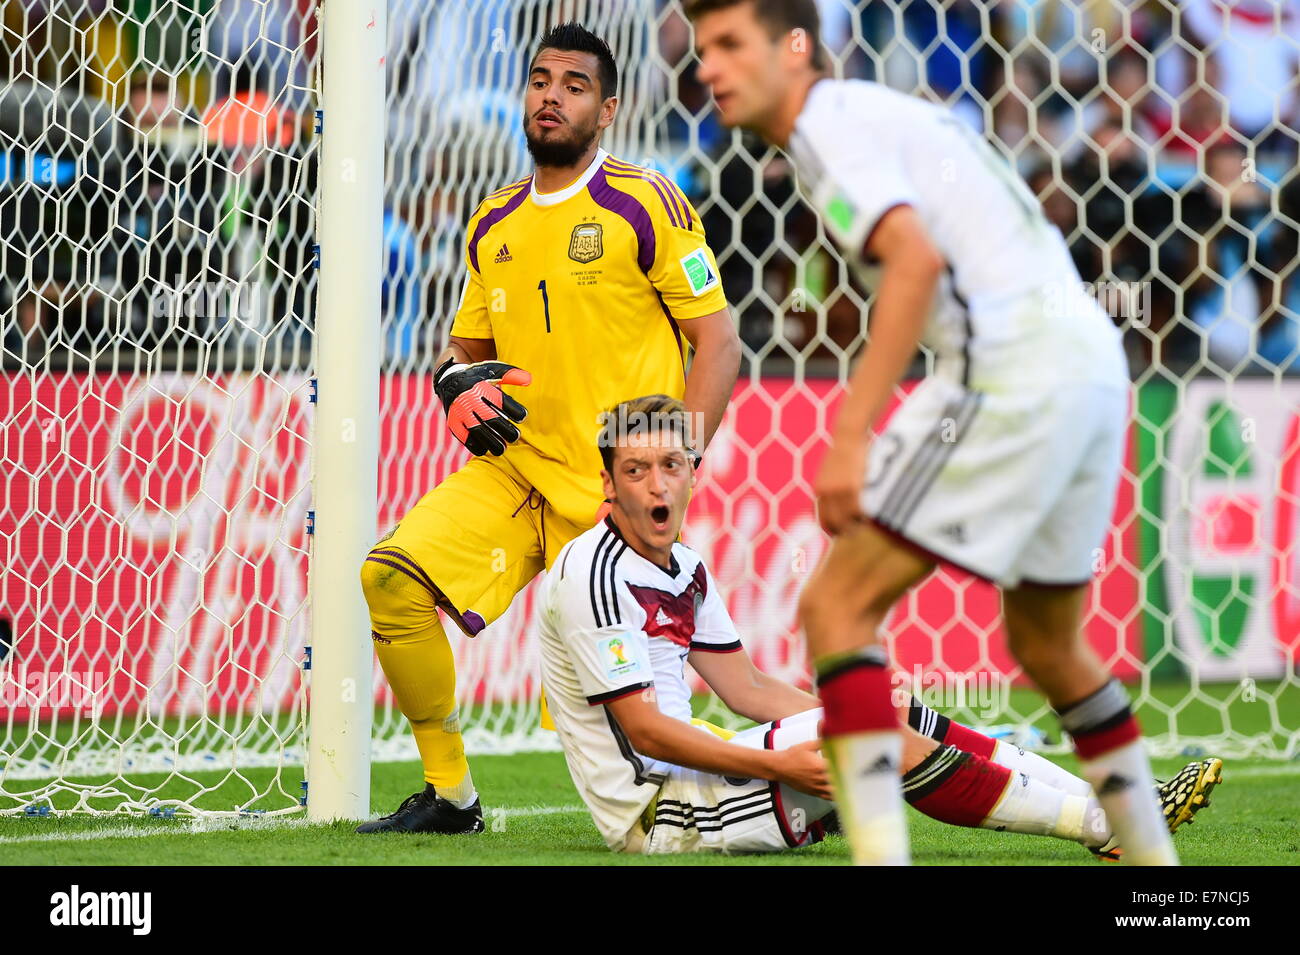 Sergio ROMERO. Argentina v Germany. Final. FIFA World Cup 2014 Brazil. Maracana Stadium, Rio. 13 July 2014. Stock Photo